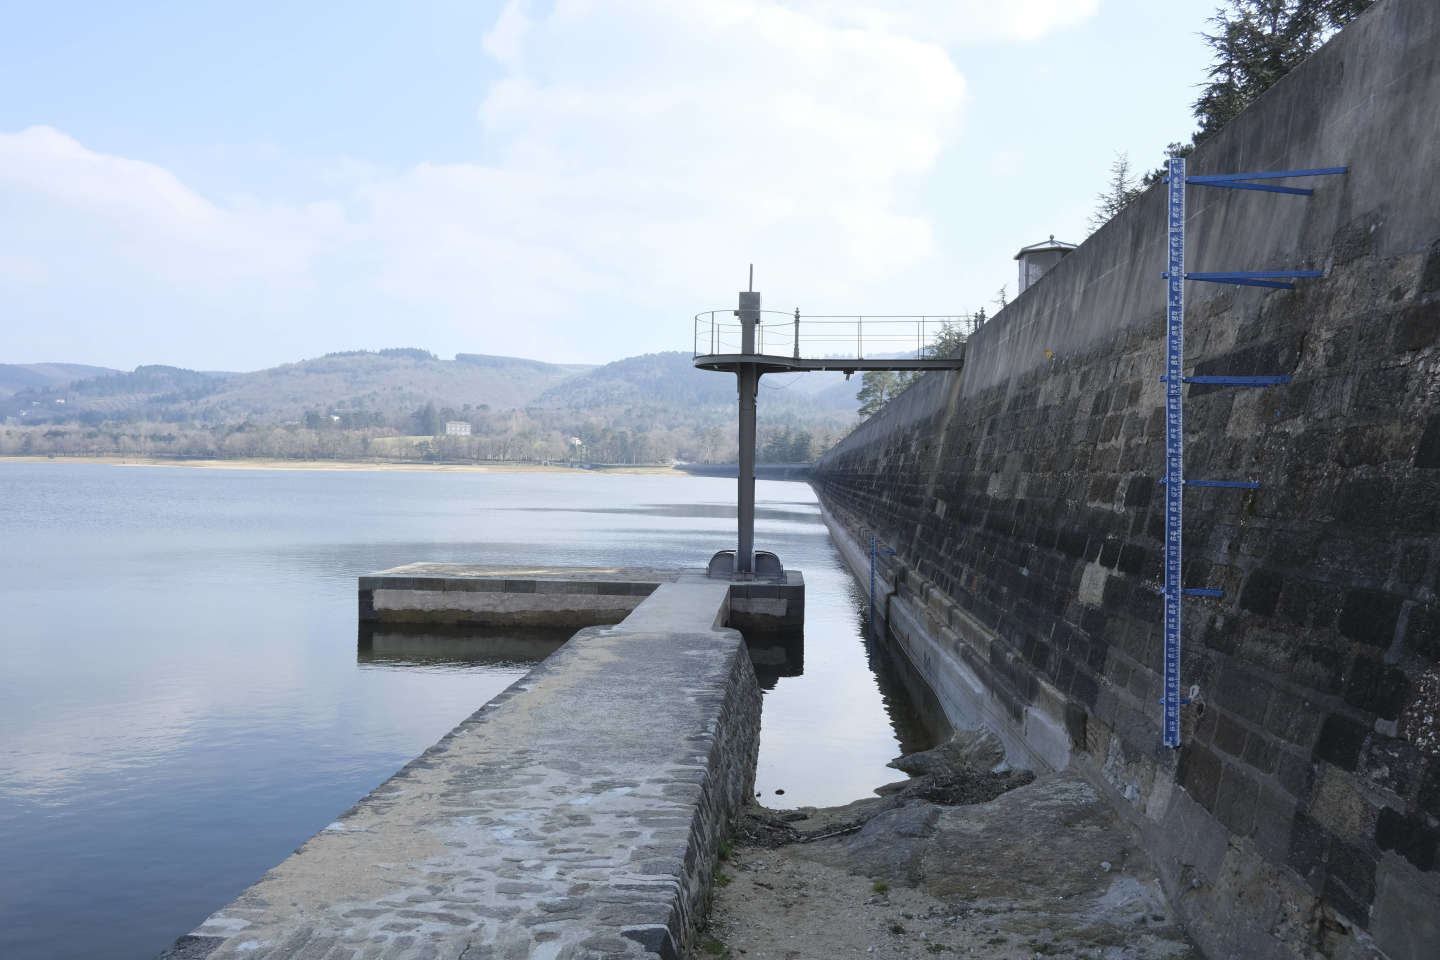 Sécheresse : à cause du manque d’eau, le canal du Midi retarde son remplissage